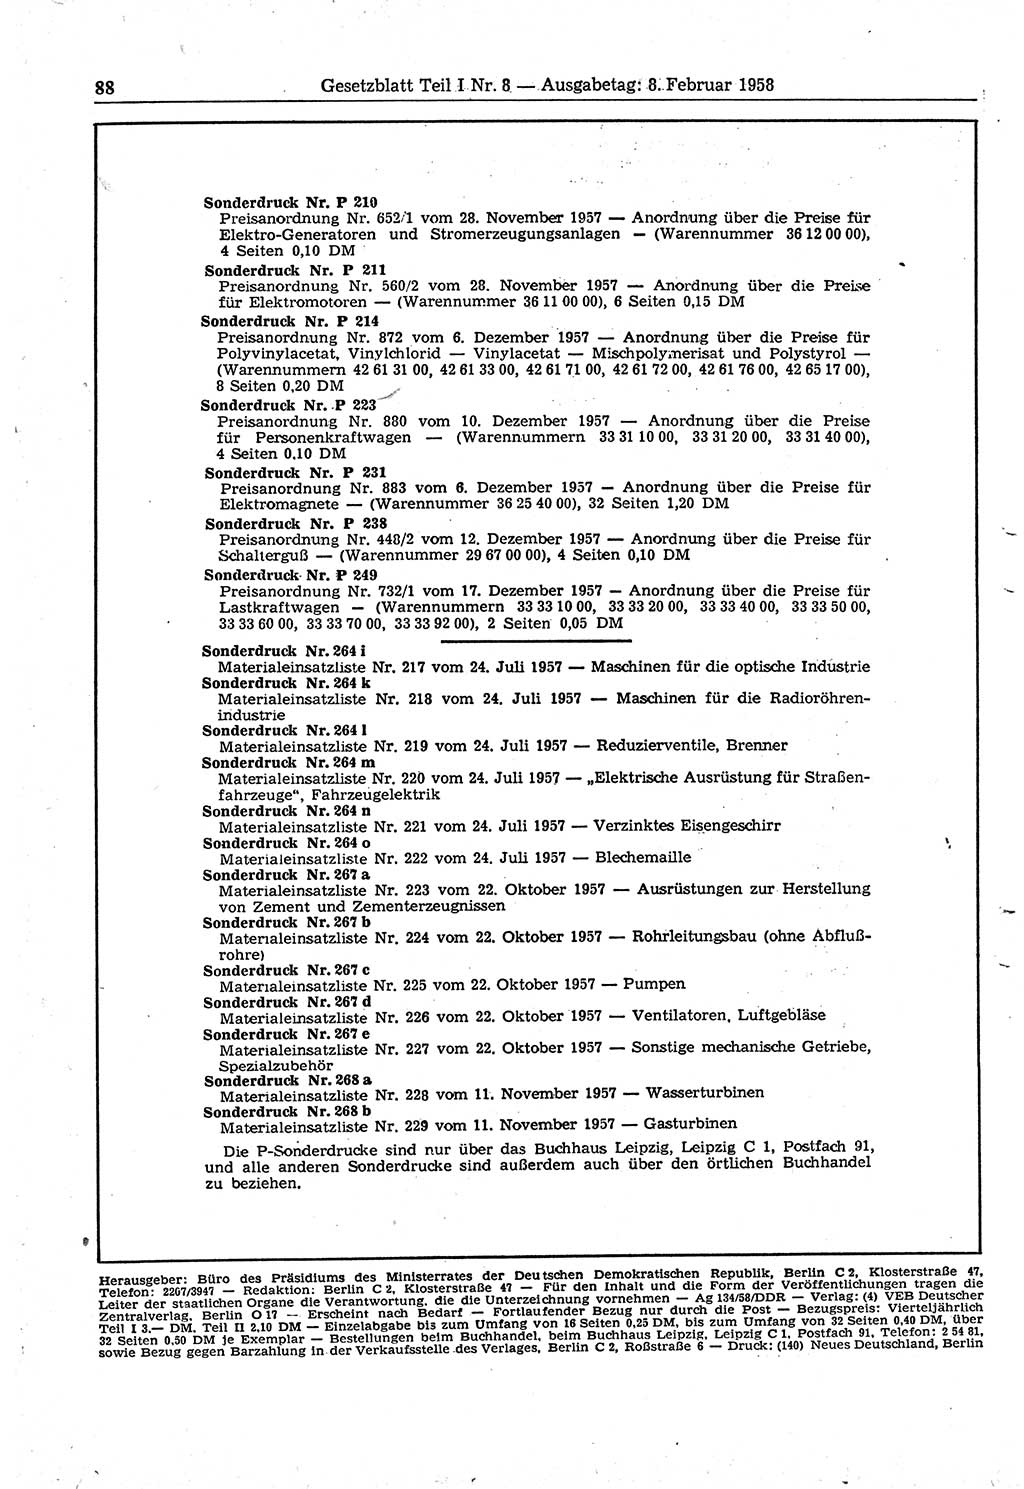 Gesetzblatt (GBl.) der Deutschen Demokratischen Republik (DDR) Teil Ⅰ 1958, Seite 88 (GBl. DDR Ⅰ 1958, S. 88)